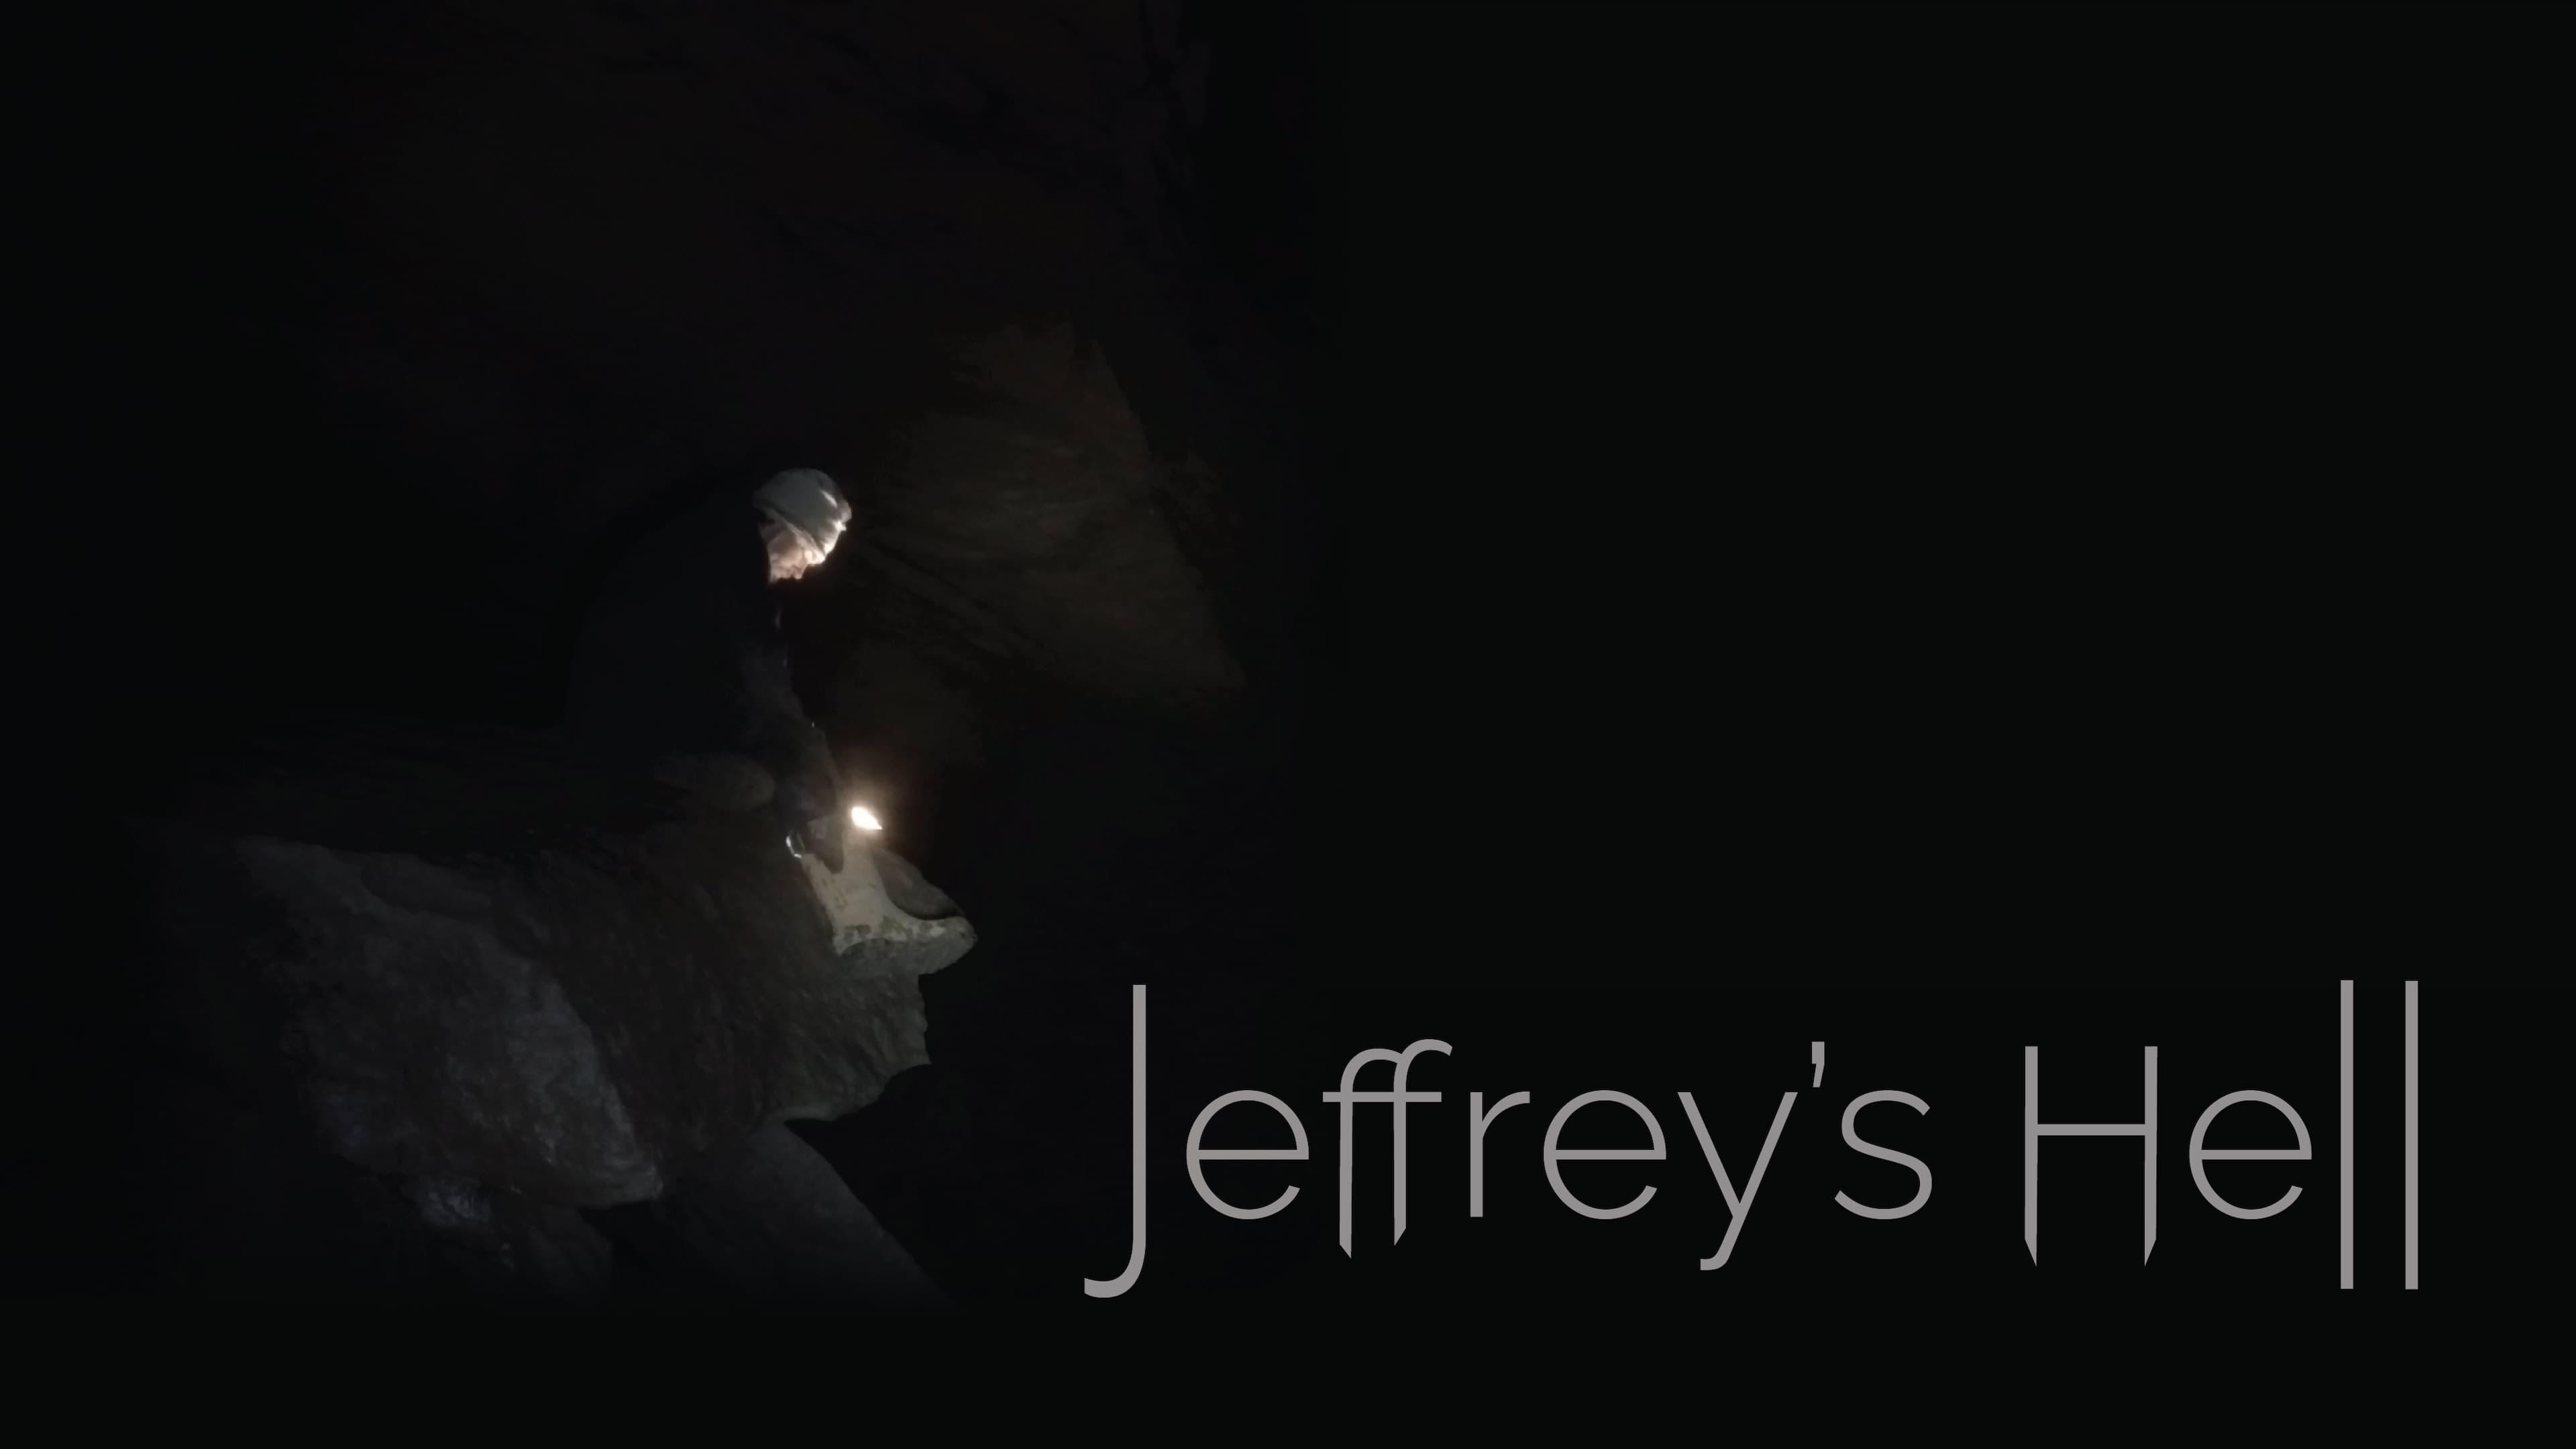 Jeffrey's Hell backdrop